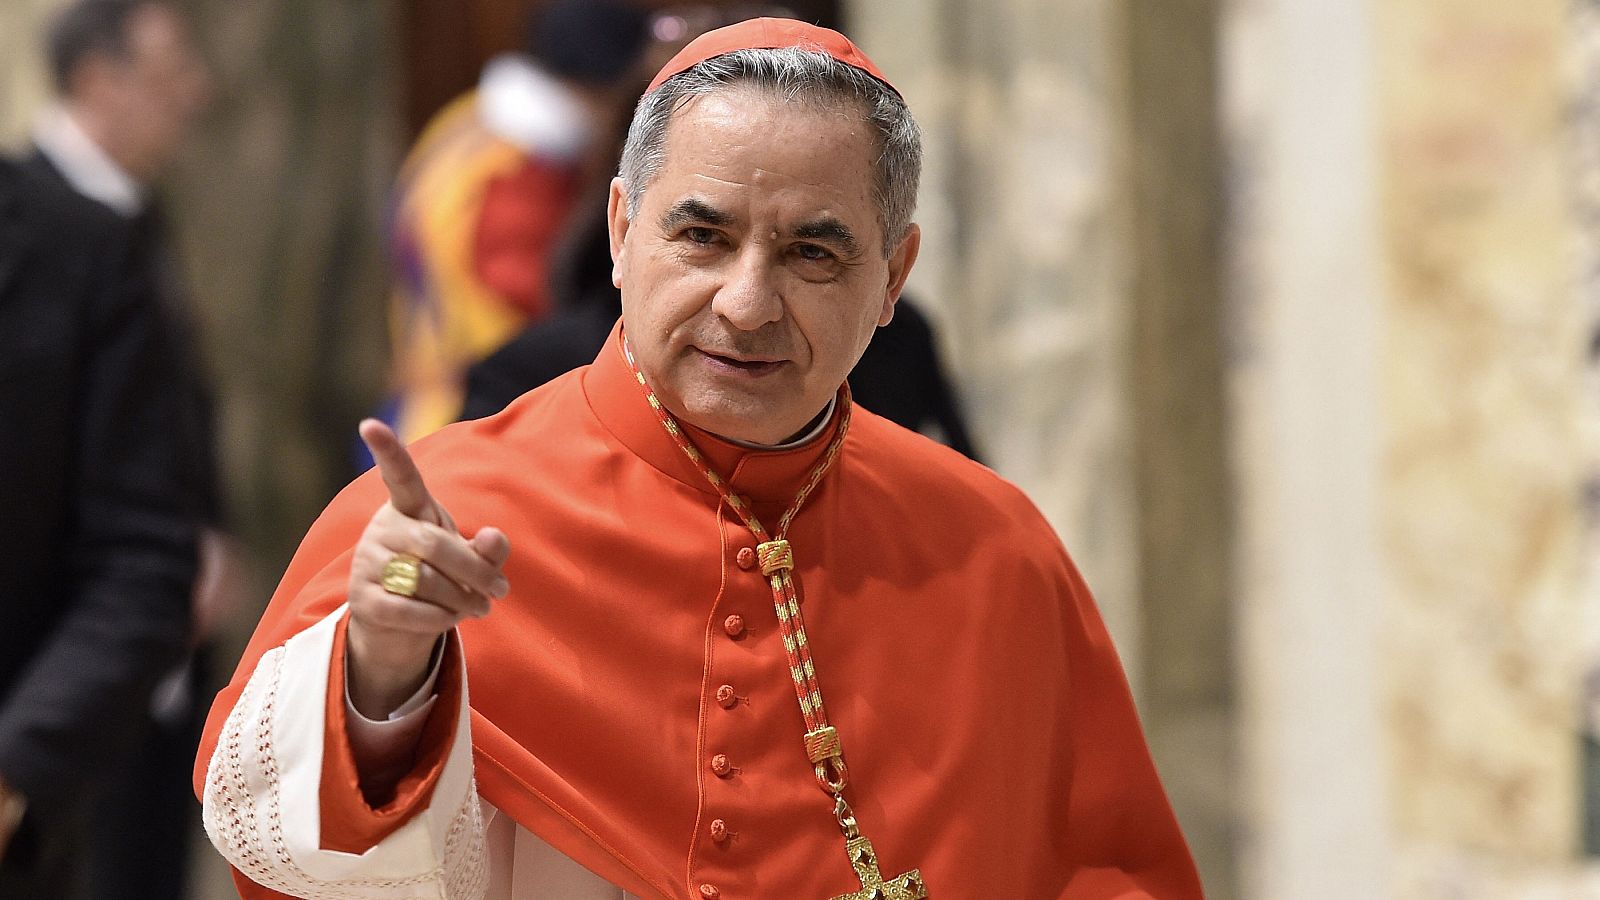 Macrojuicio en el Vaticano: por primera vez, un cardenal en el banquillo